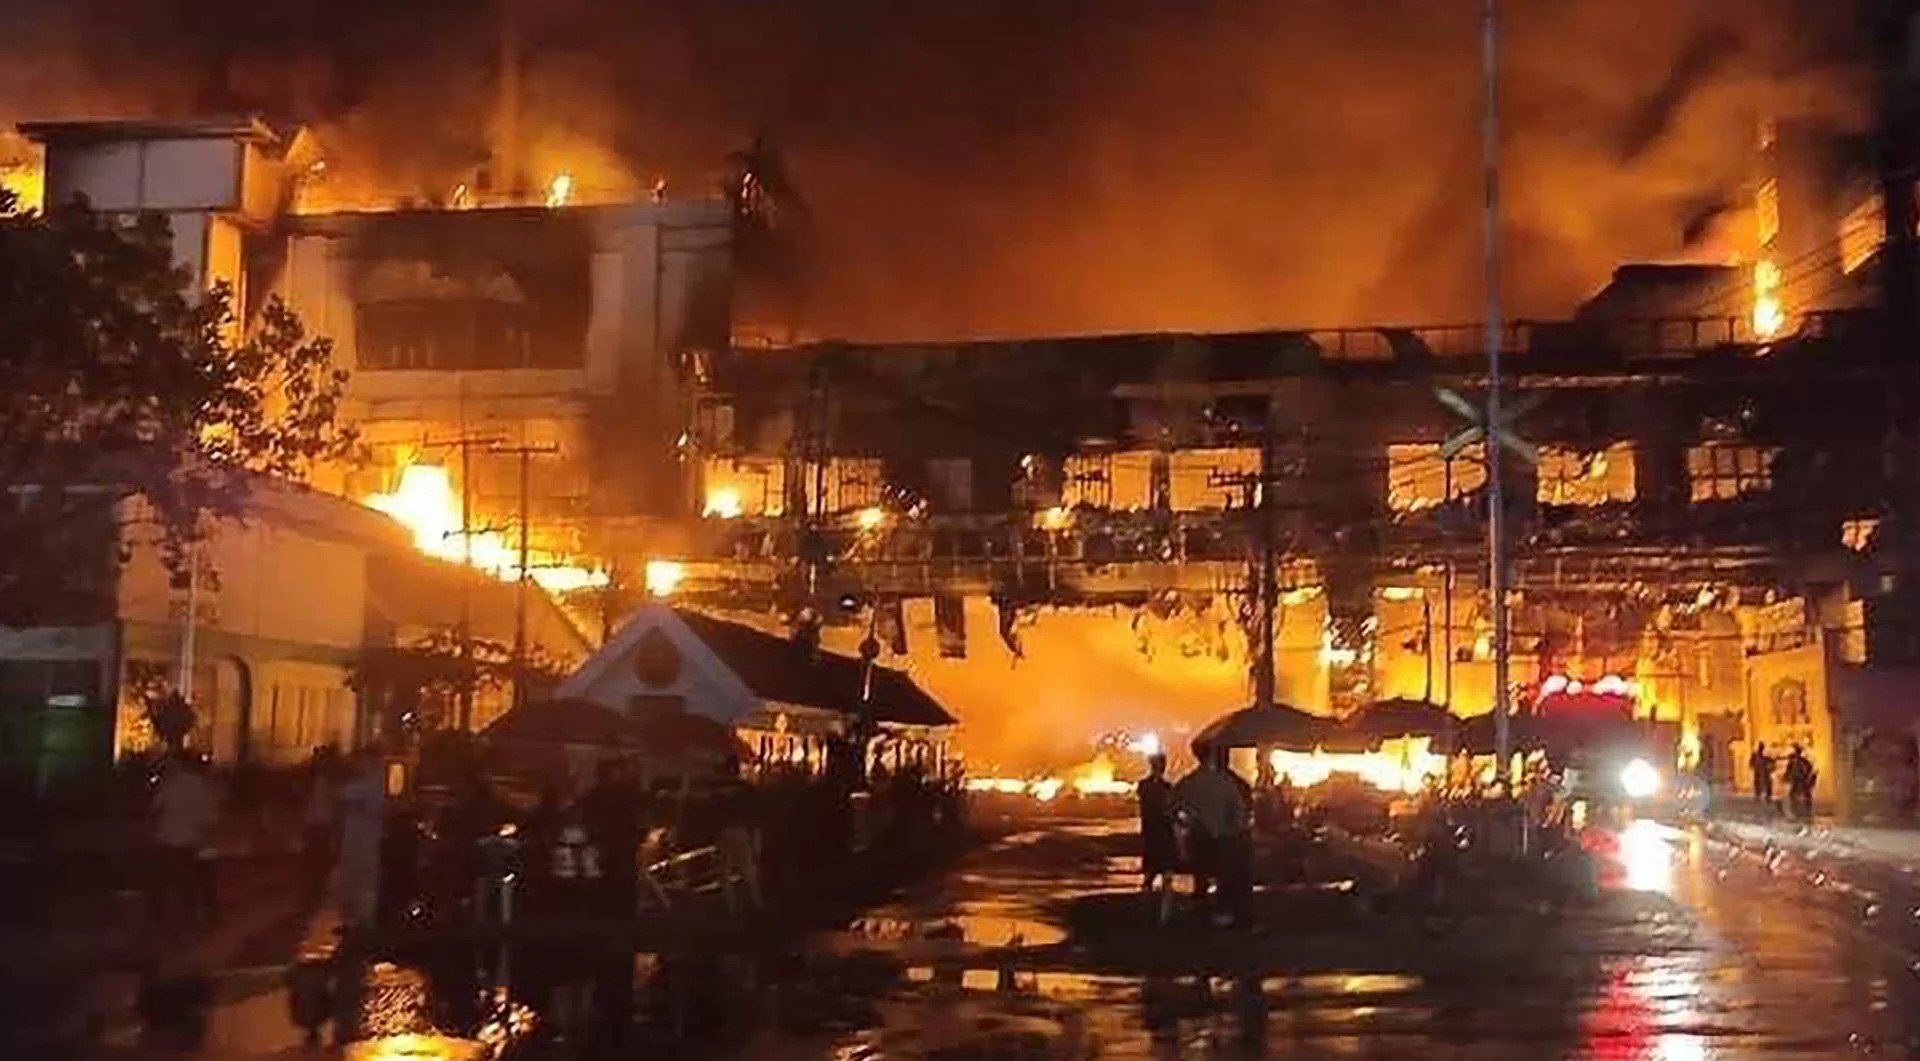 Có nạn nhân người Việt trong vụ cháy casino ở Campuchia - Ảnh 1.